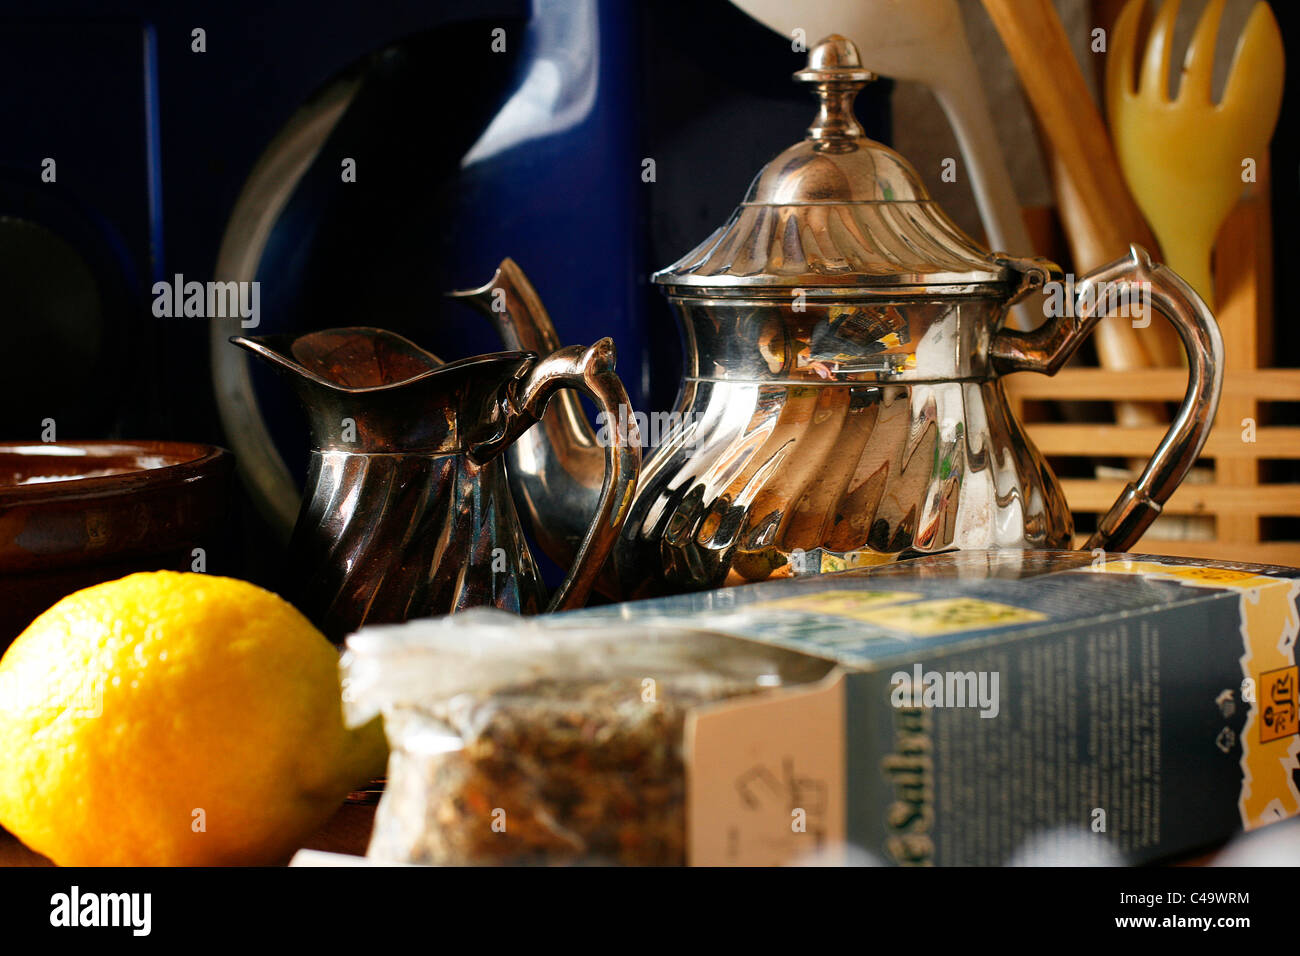 Tisane, une vieille théière en argent, un petit pot à lait et un citron devant d'autres trucs de cuisine Banque D'Images